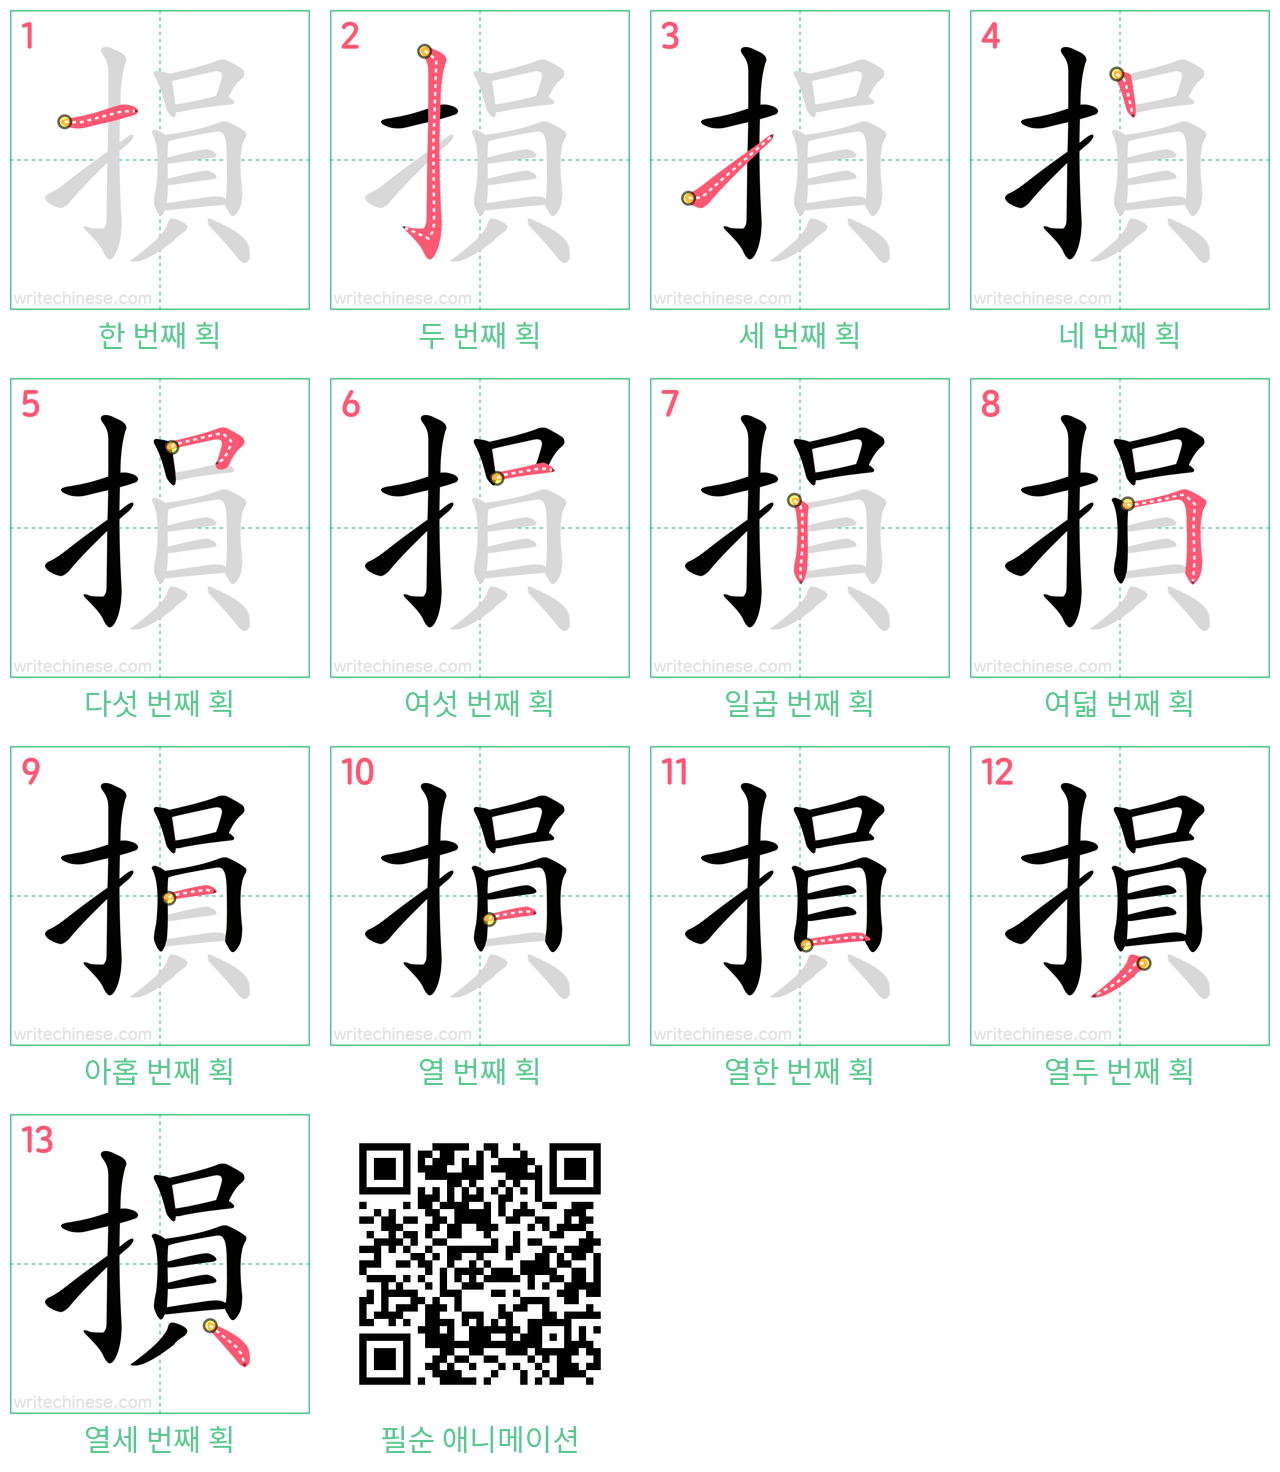 損 step-by-step stroke order diagrams